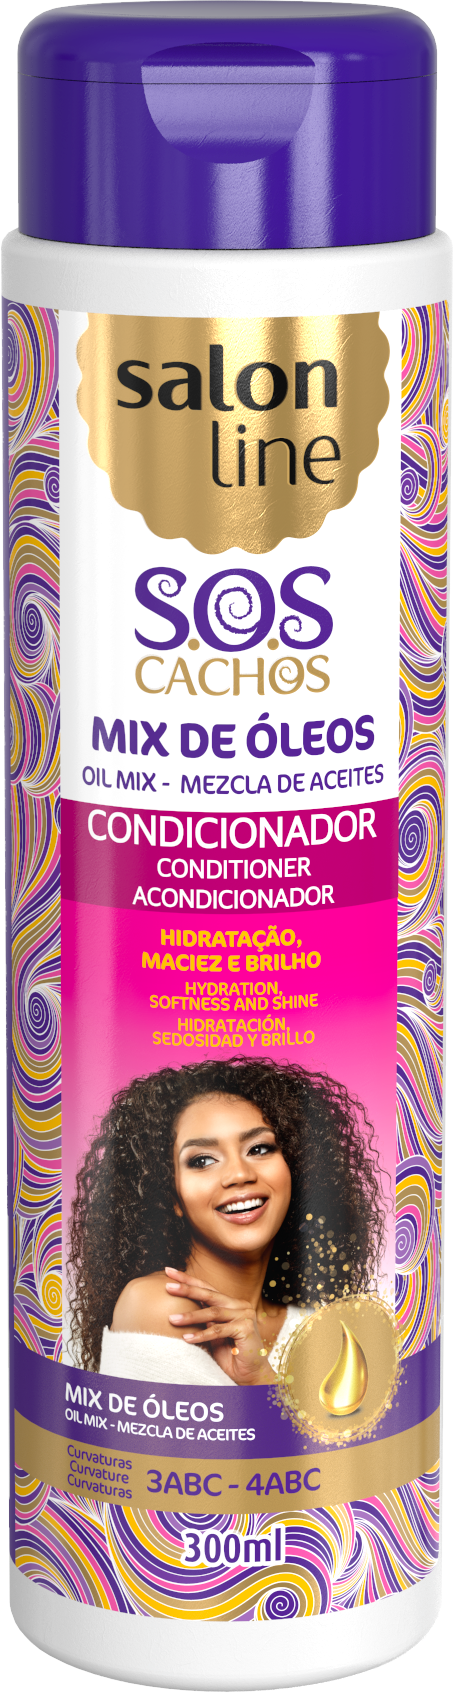 Salon Line S.O.S Cachos Oil Mix Conditioner 300ml Salon Line